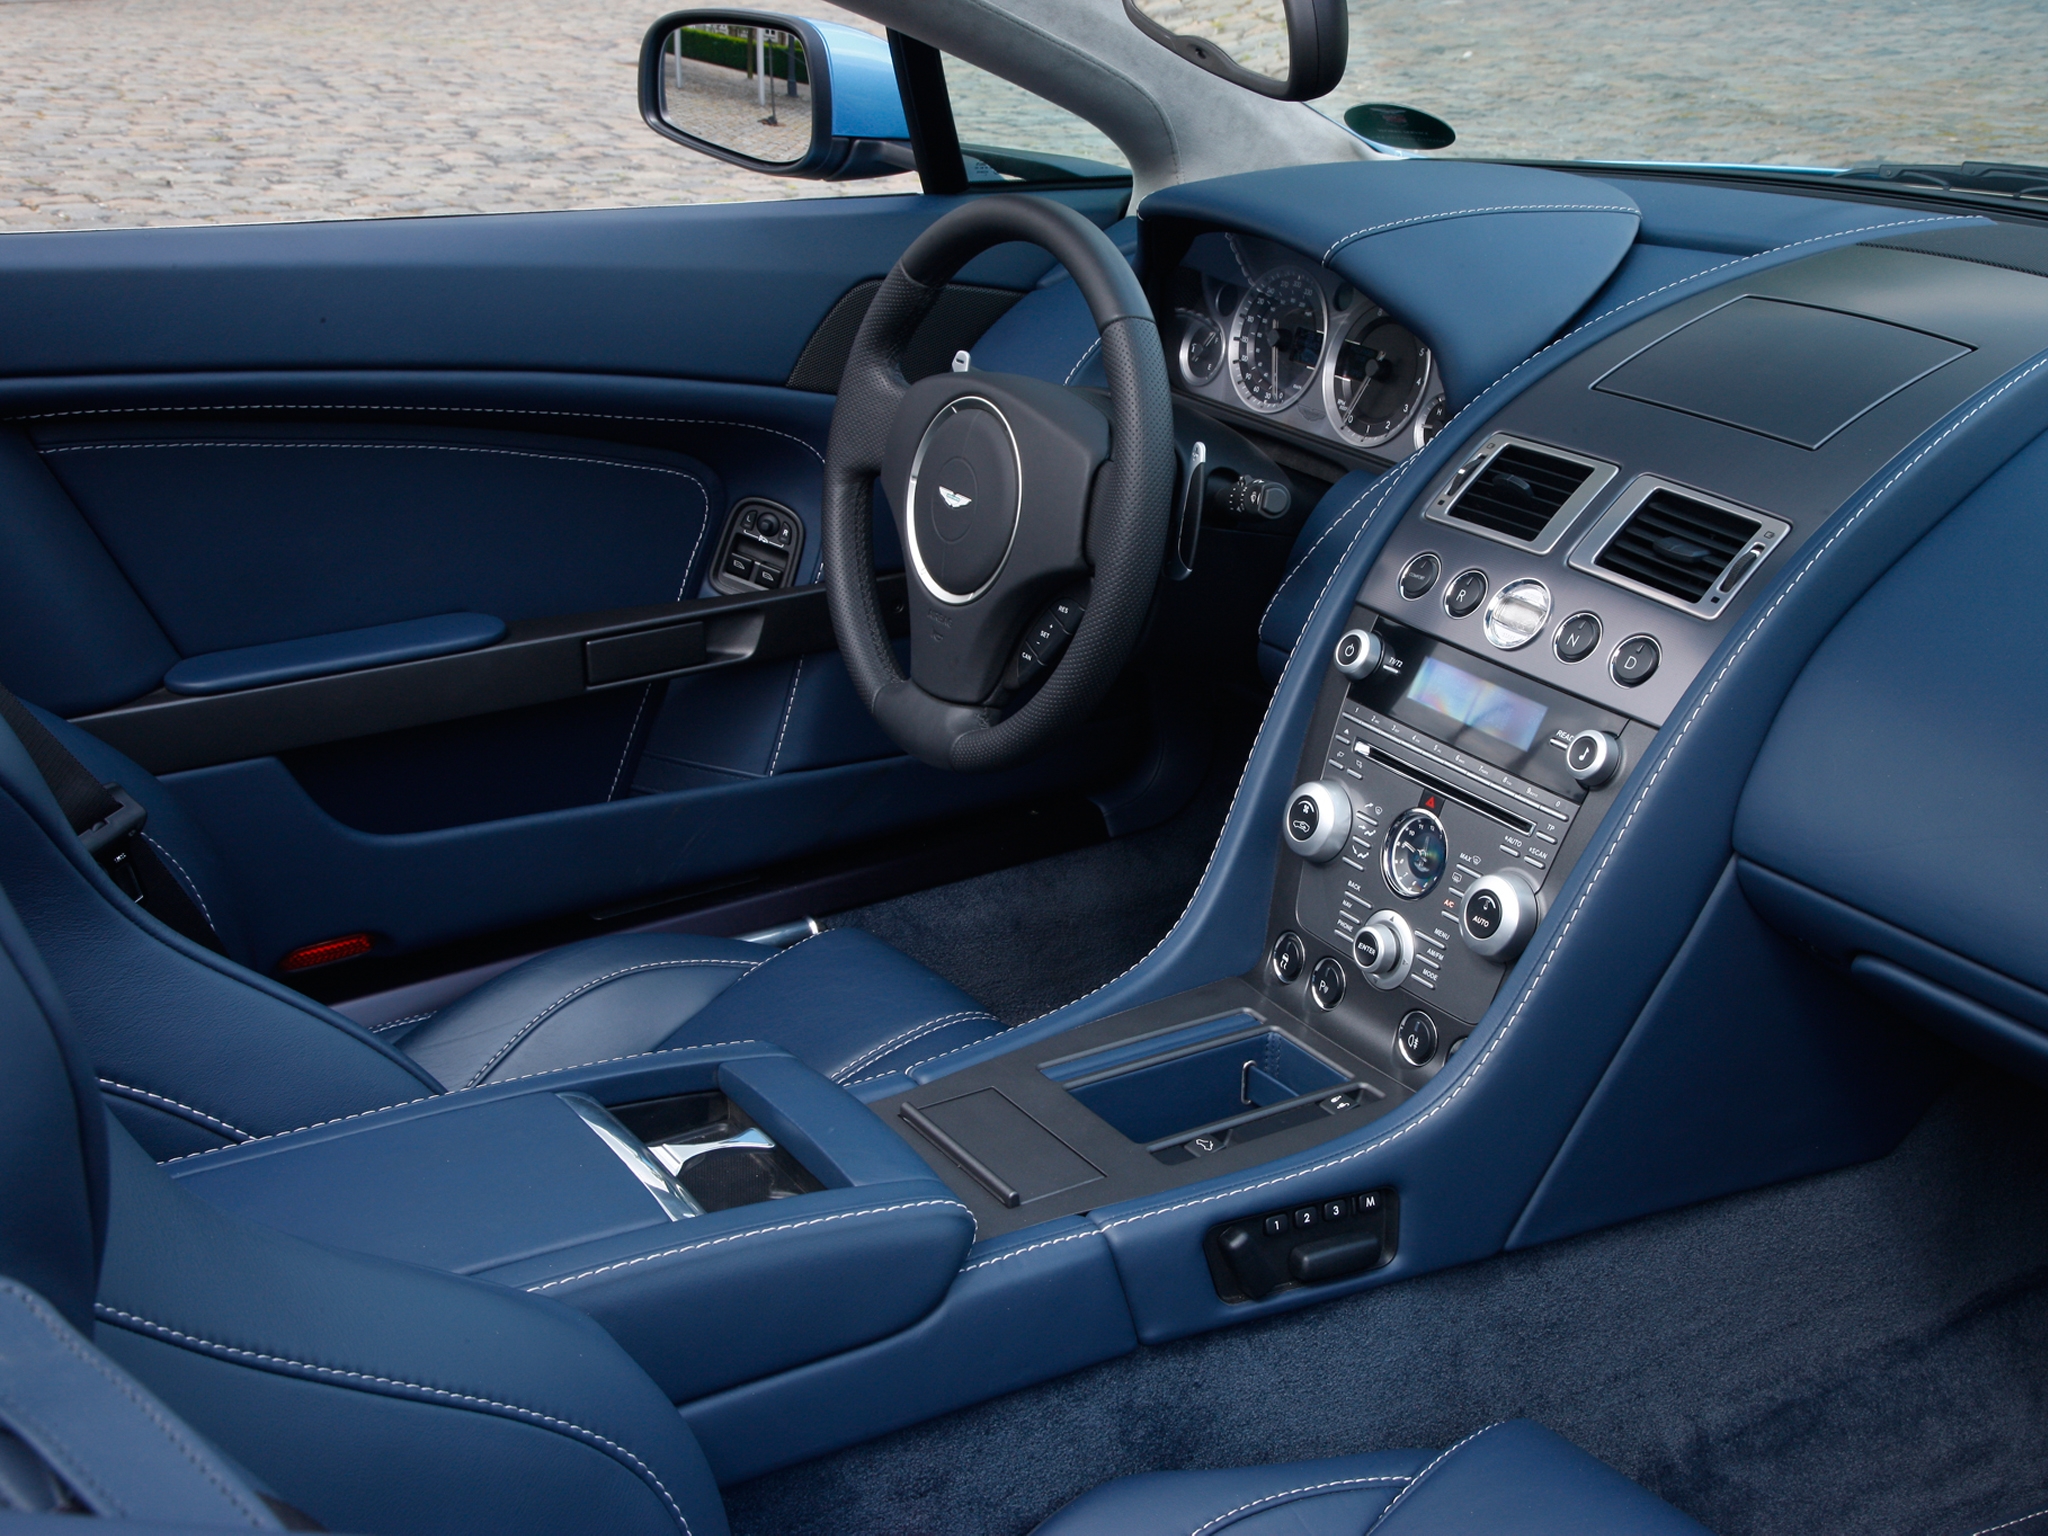 salon, cars, interior, aston martin, blue, 2008, steering wheel, rudder, speedometer, v8, vantage